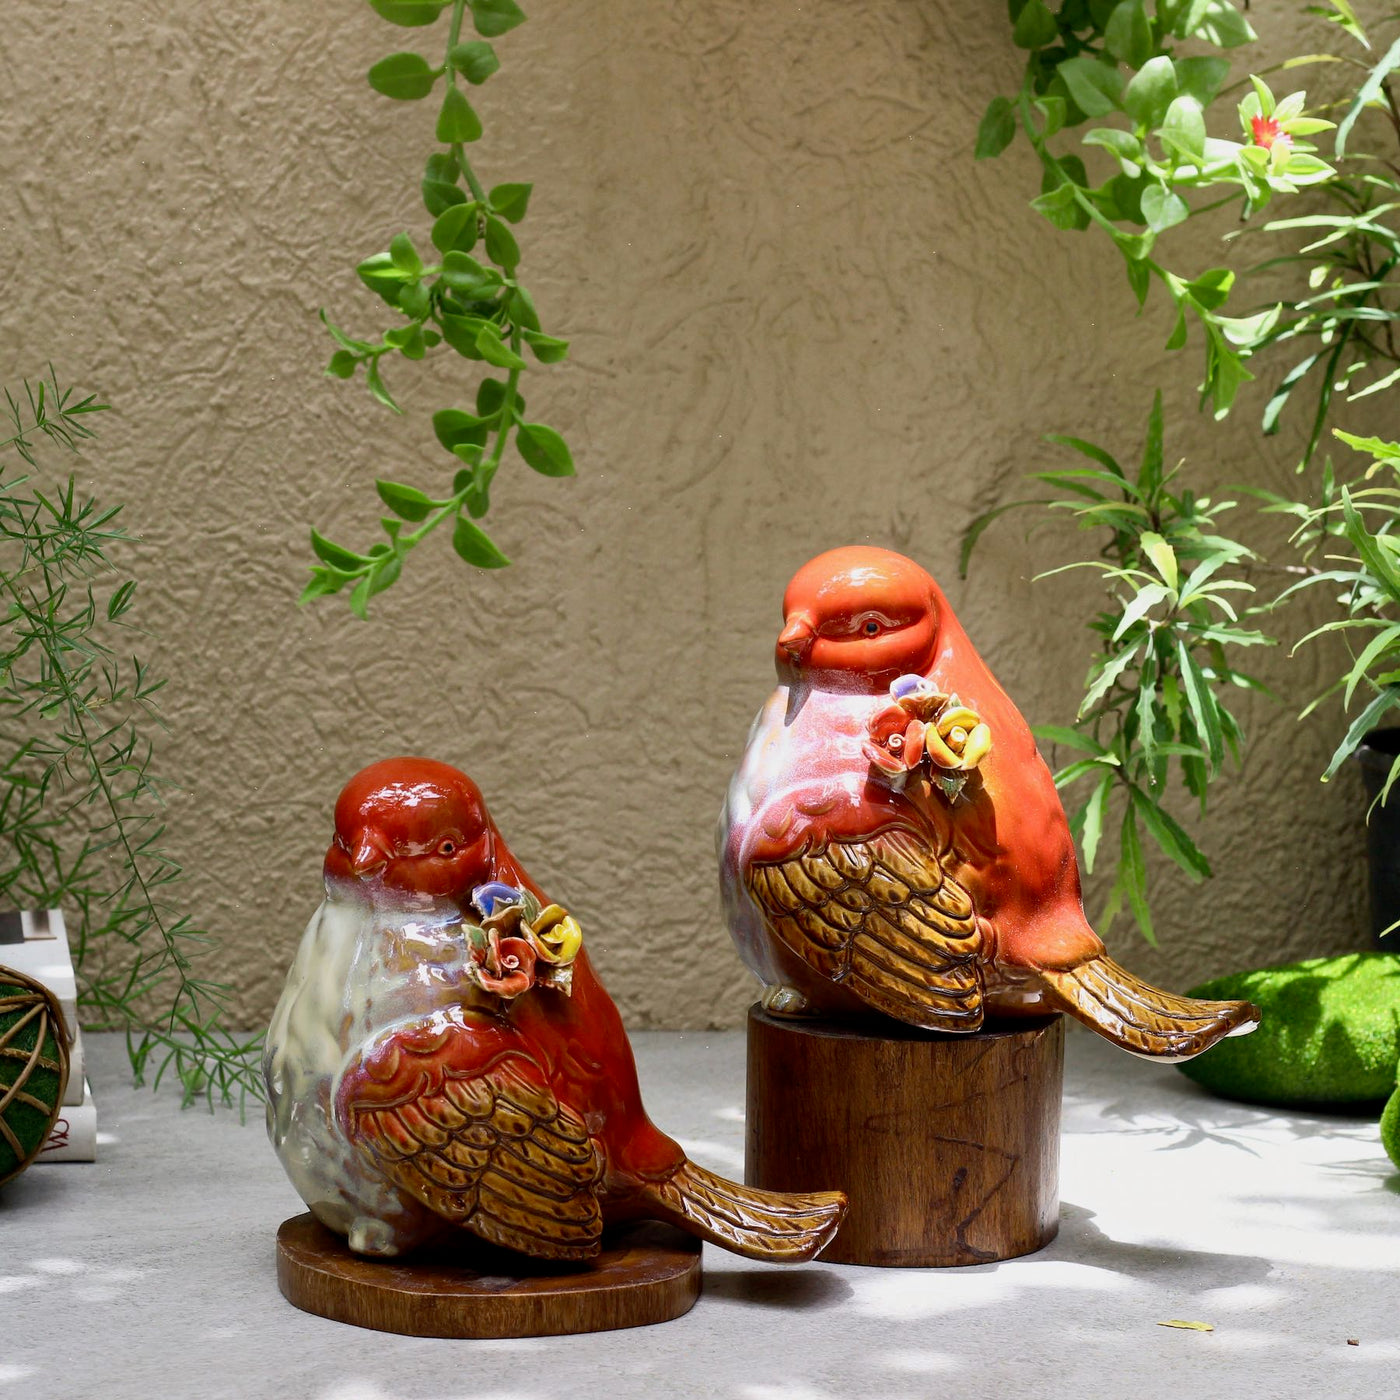 ceramic bird showpiece